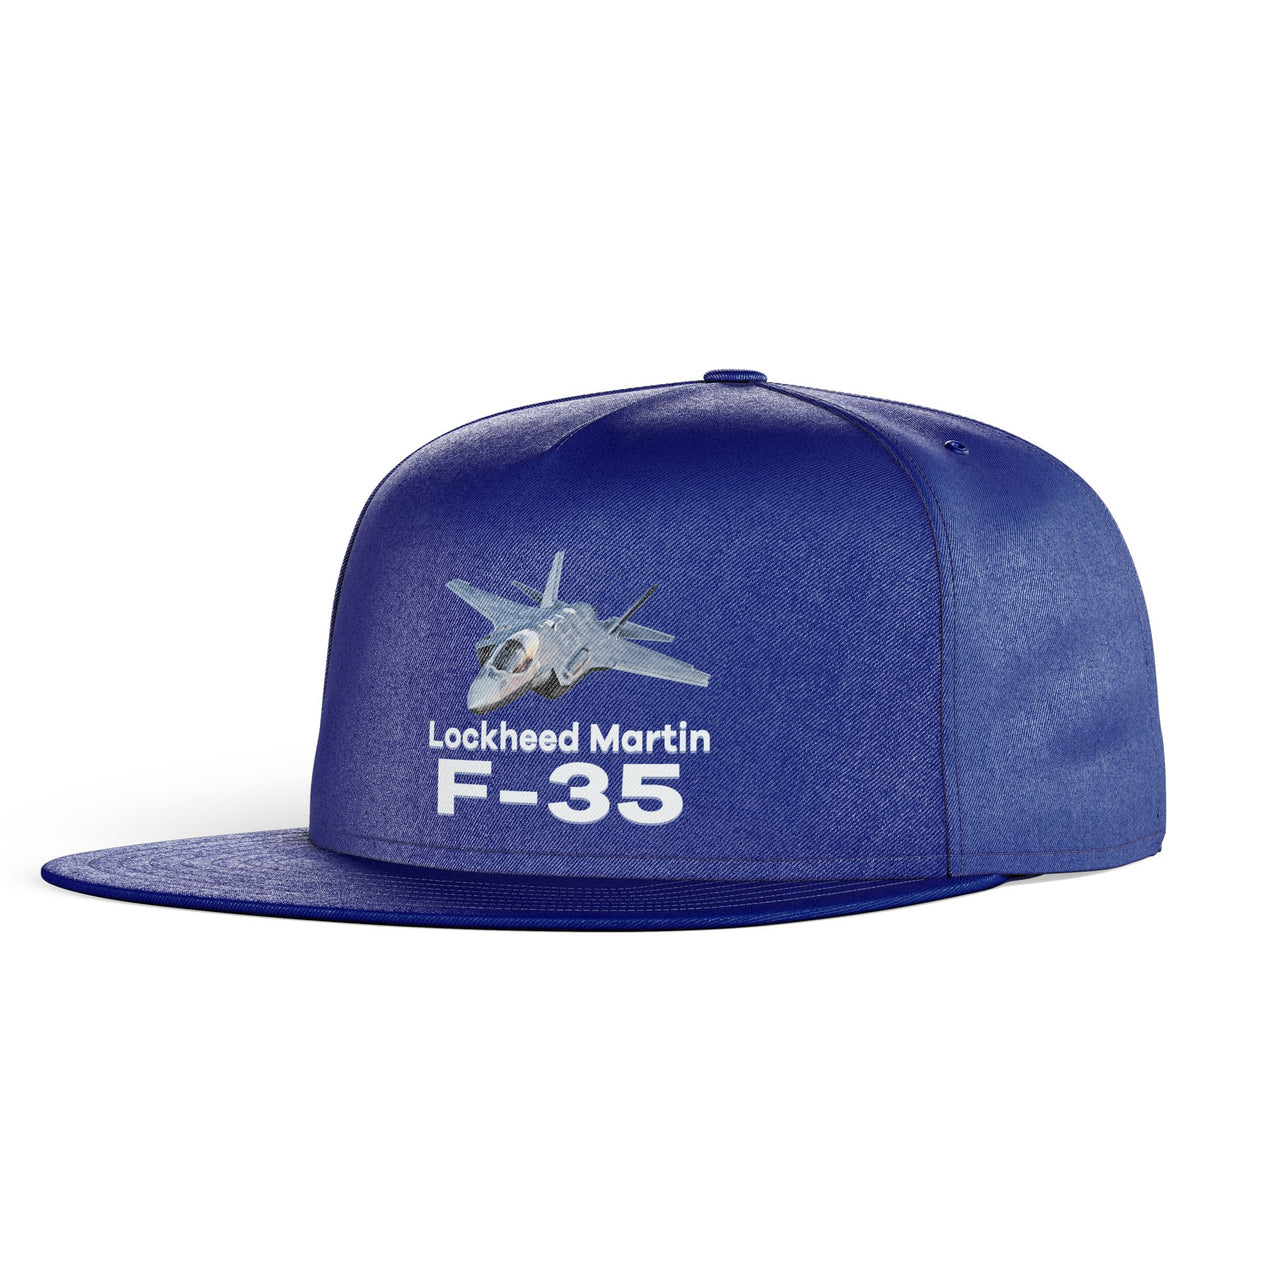 The Lockheed Martin F35 Designed Snapback Caps & Hats